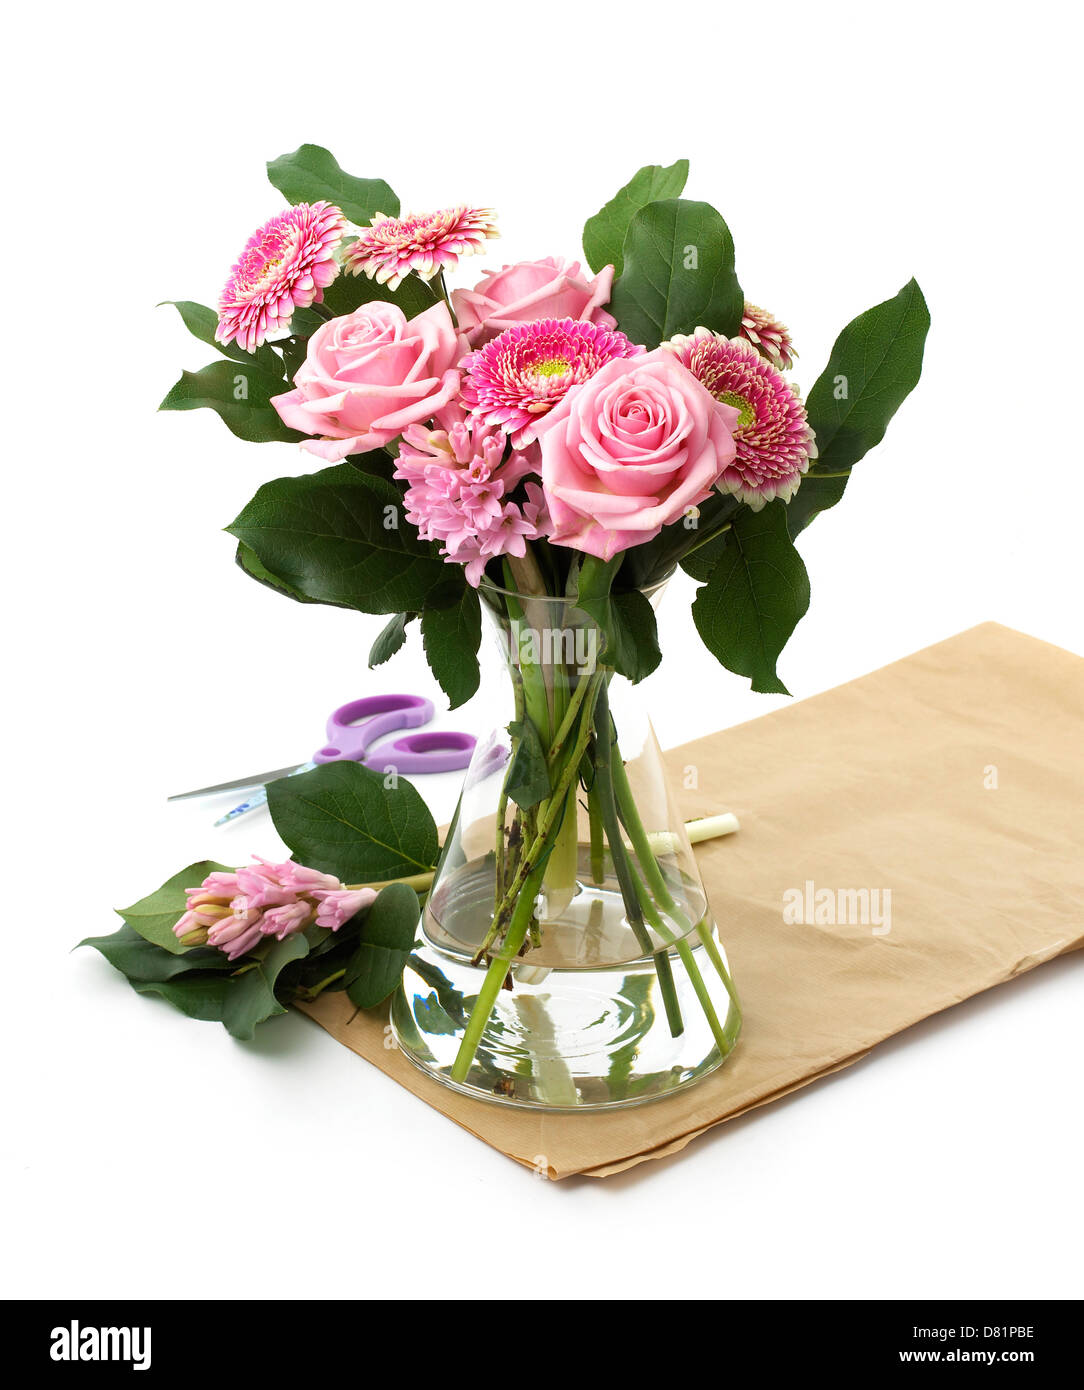 Schneiden Sie rosa Rosen in Glasvase auf einem weißen Hintergrund, einschließlich Verpackung, Papier und Schere ausschneiden Stockfoto